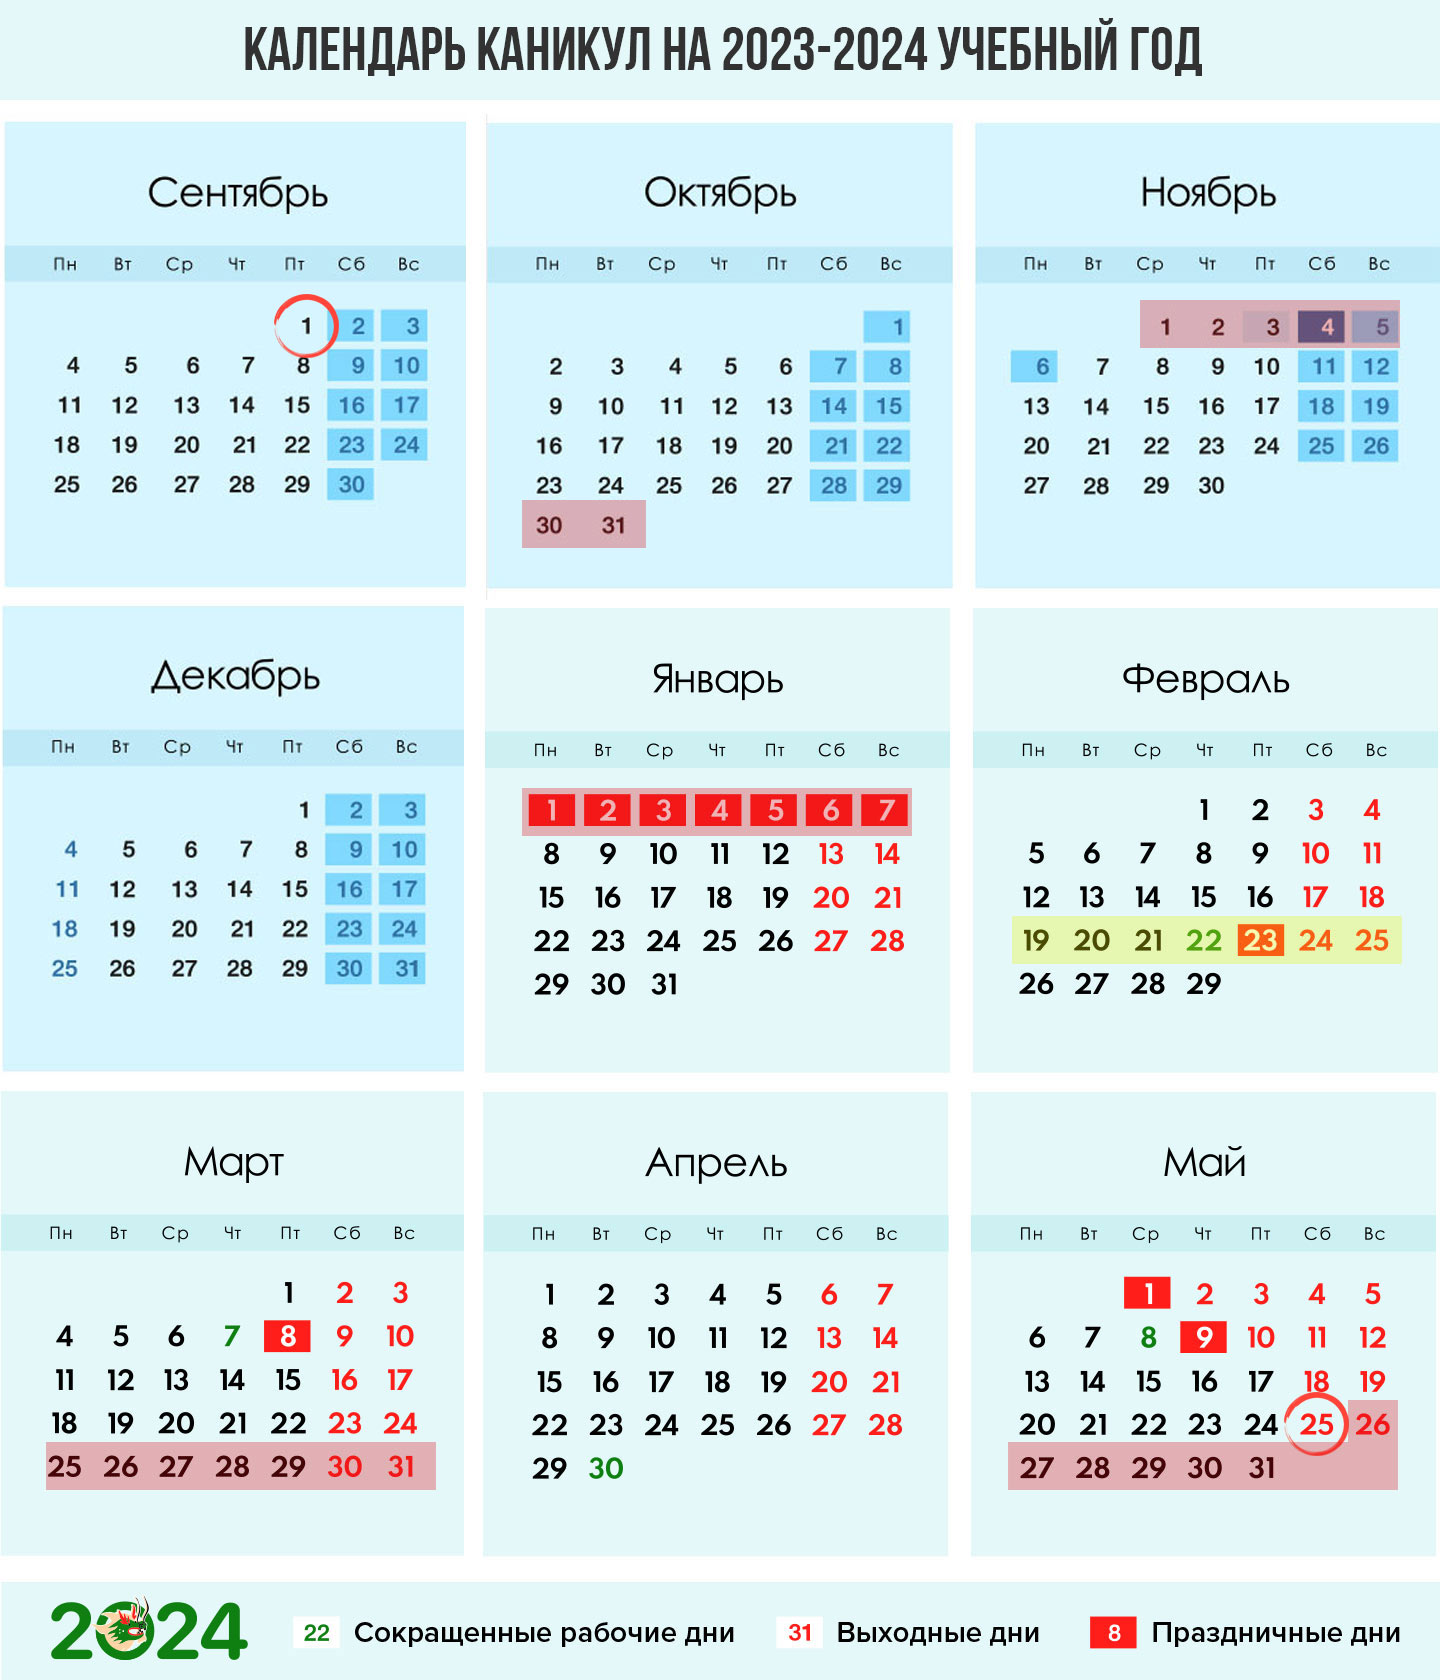 Календарь каникул для четвертей на 2023-2024 учебный год